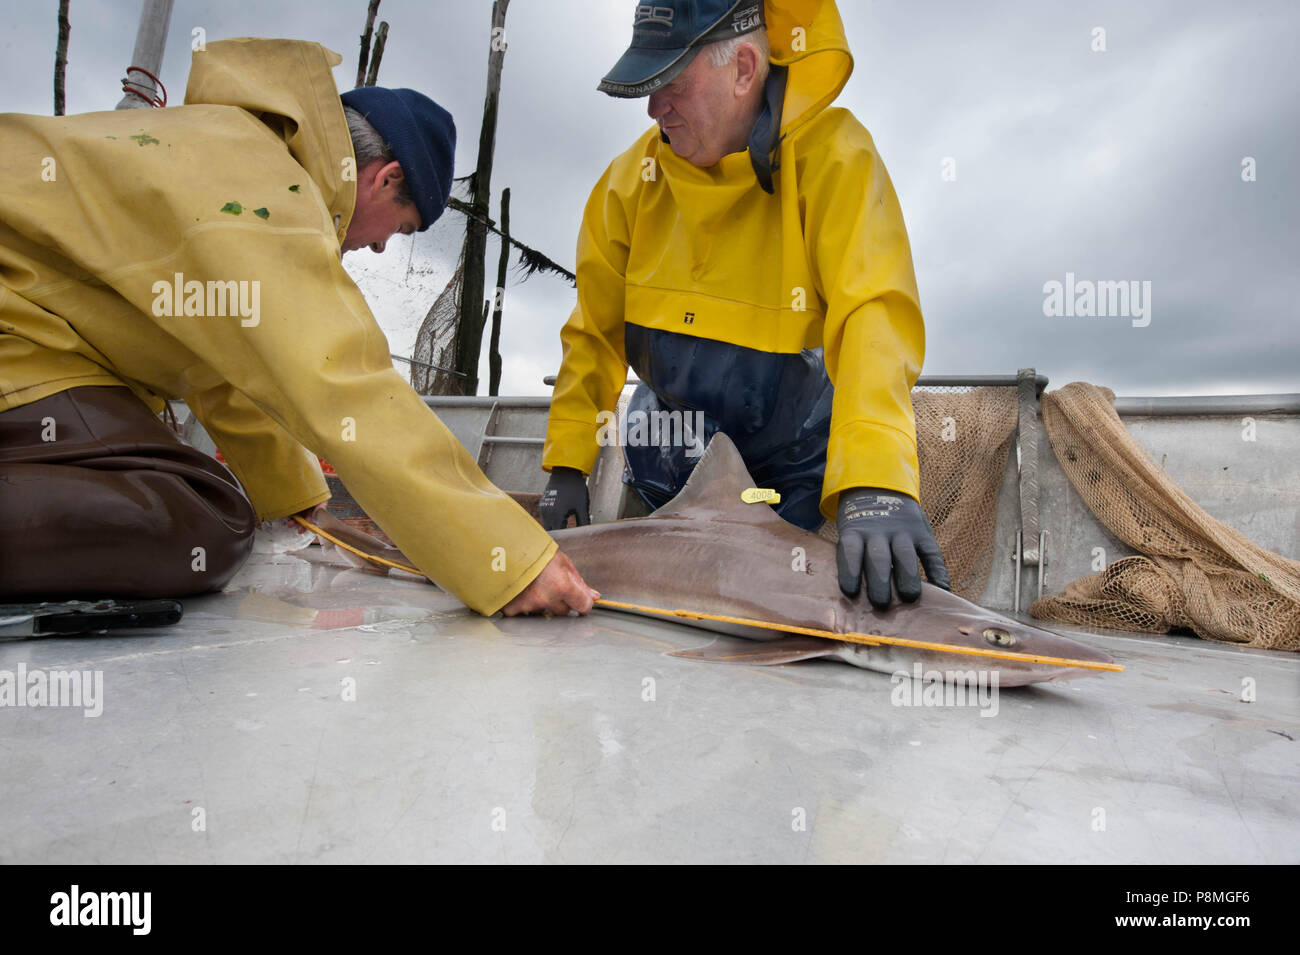 Los pescadores midiendo un tagged liso-hound antes de soltar el animal. Estos tiburones son etiquetados para la investigación por los holandeses de la pesca deportiva europea, que mostraron los patrones de migración desde Noruega hasta el Golfo de Vizcaya. Foto de stock